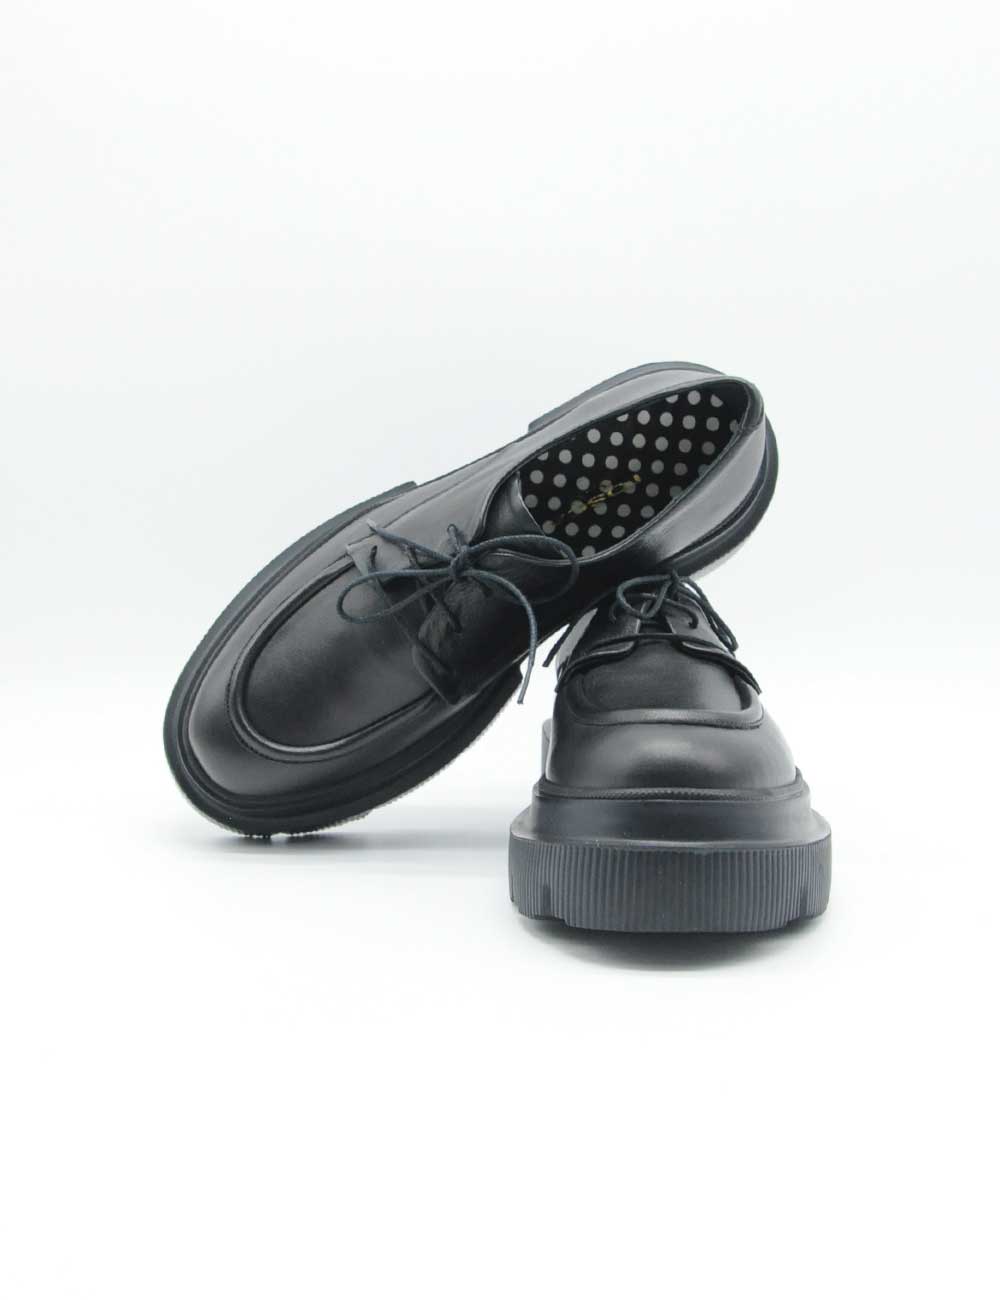 Chaussures à lacets Tosca Blu noires latines